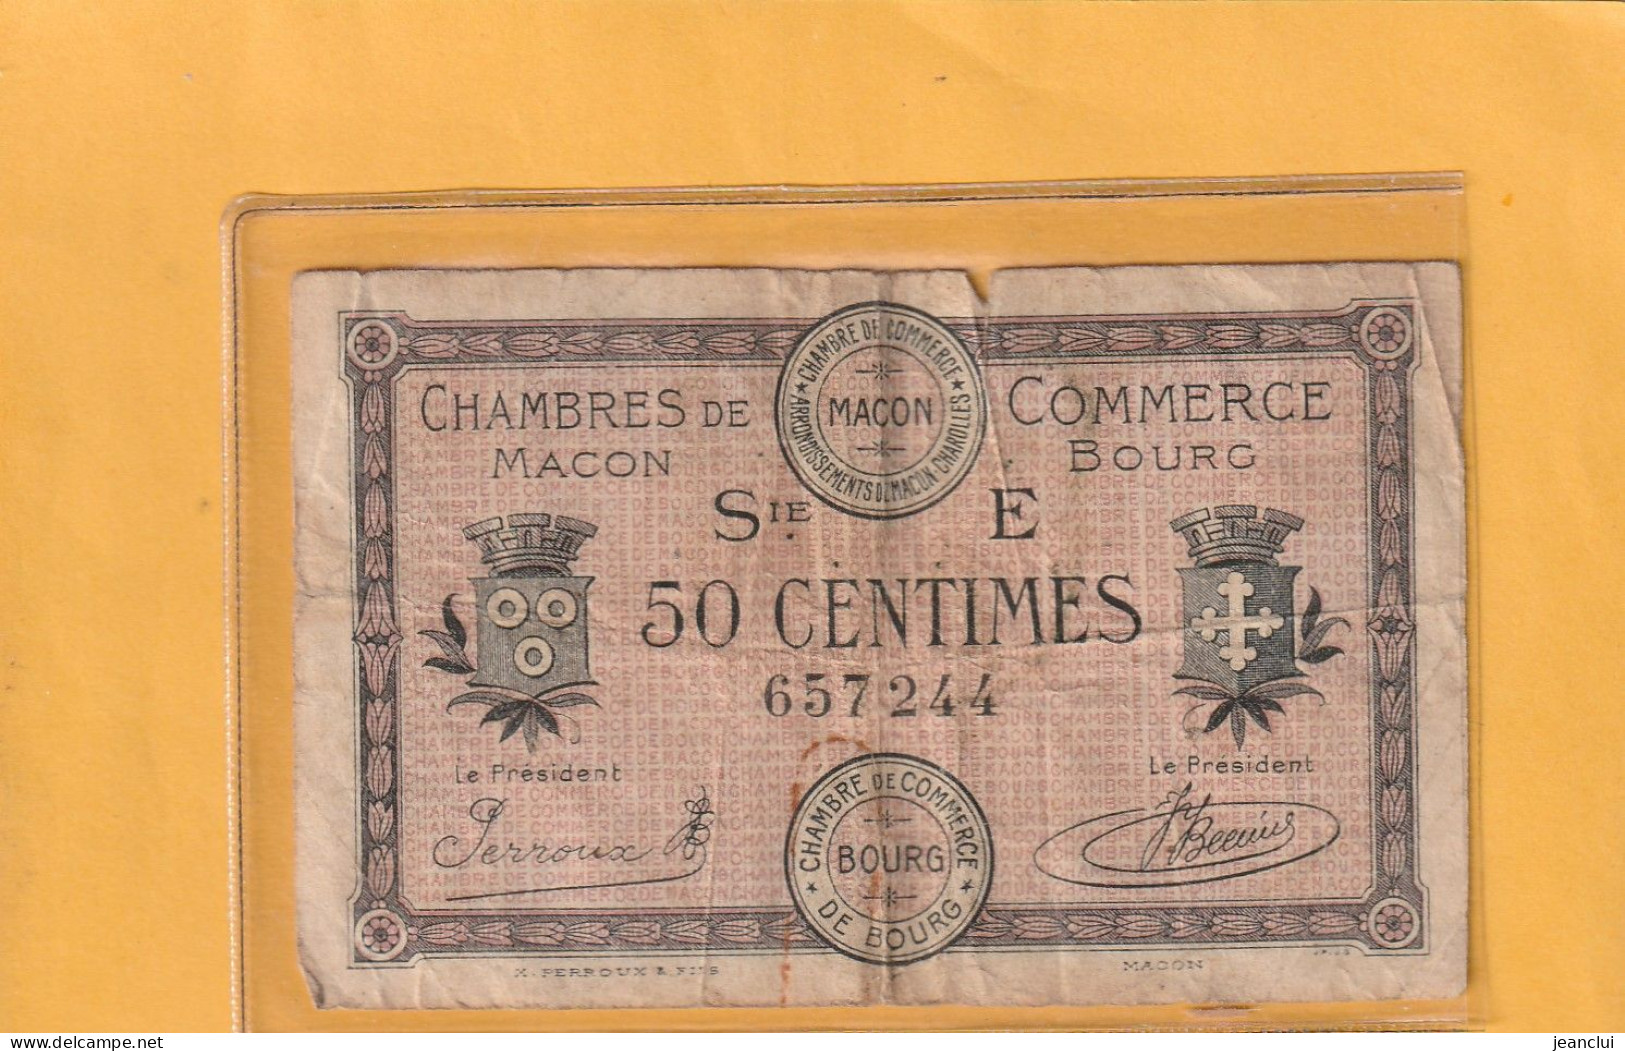 CHAMBRE DE COMMERCE DE MACON - BOURG . 50 Cts . EMISSION DU 27-4-1920 . SERIE E . N° 657244 . 2 SCANNES . BILLET USITE - Chambre De Commerce